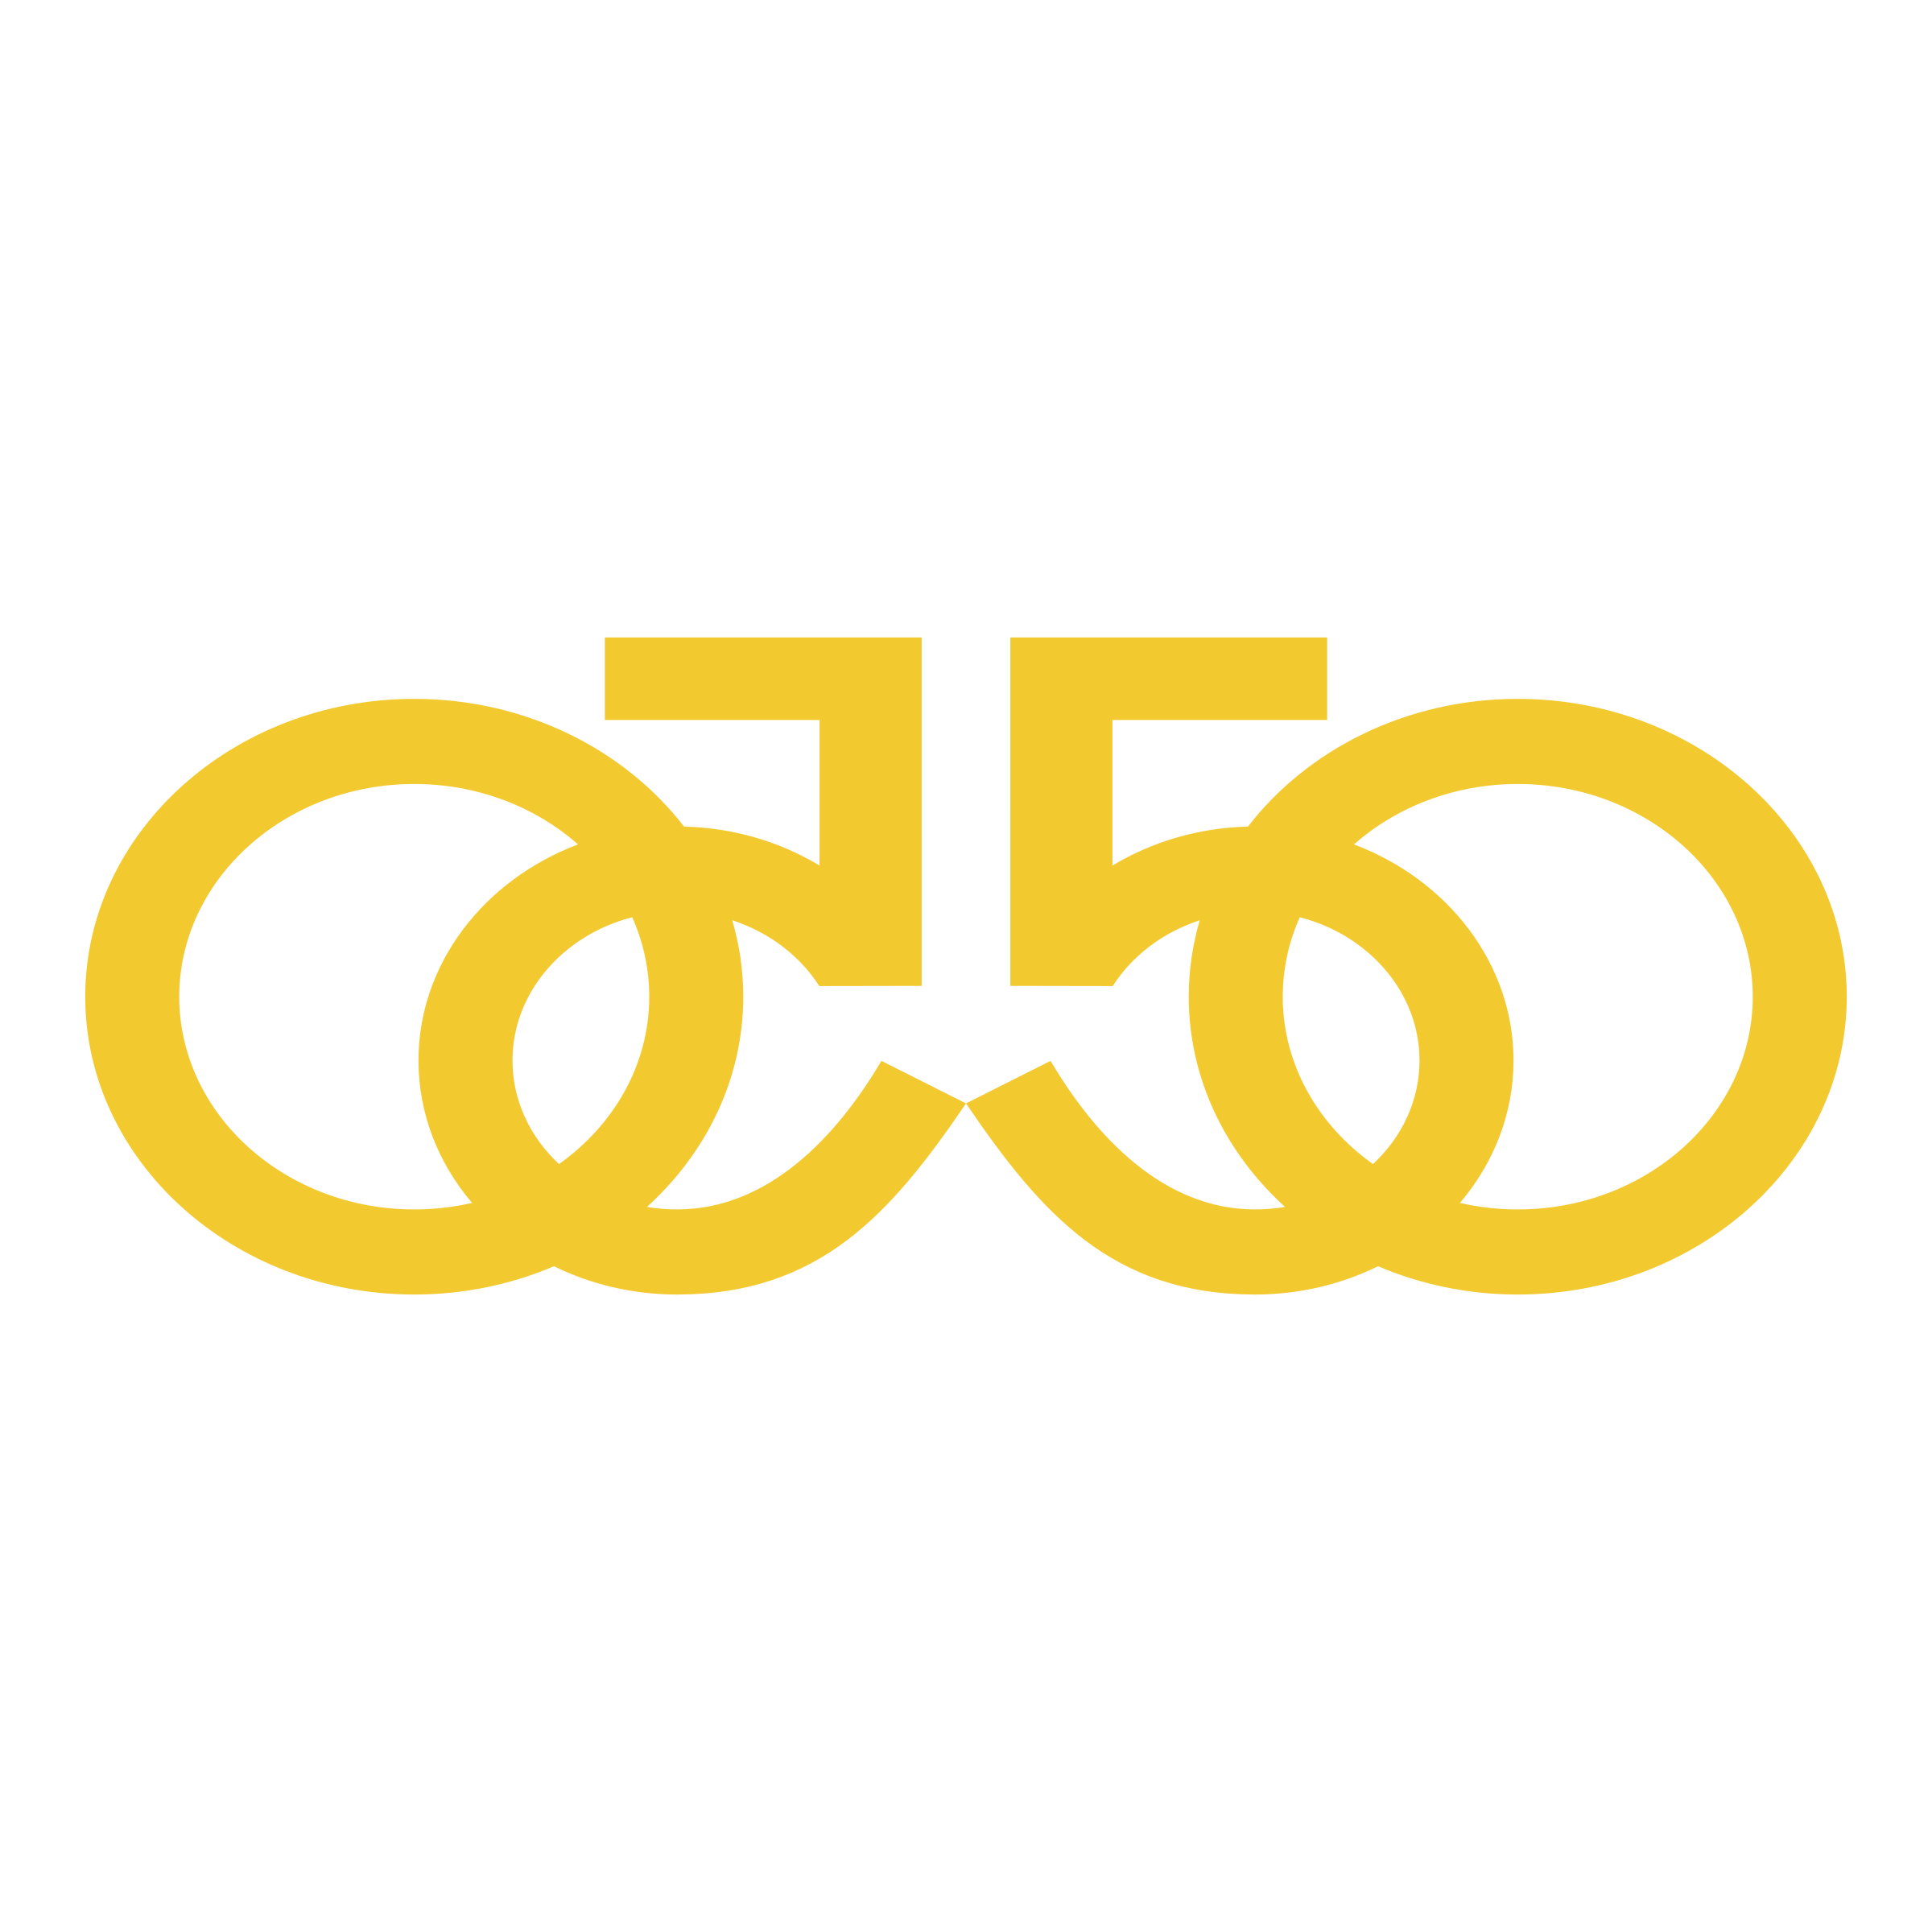 50/50 Logo - Logo PNG Transparent & SVG Vector